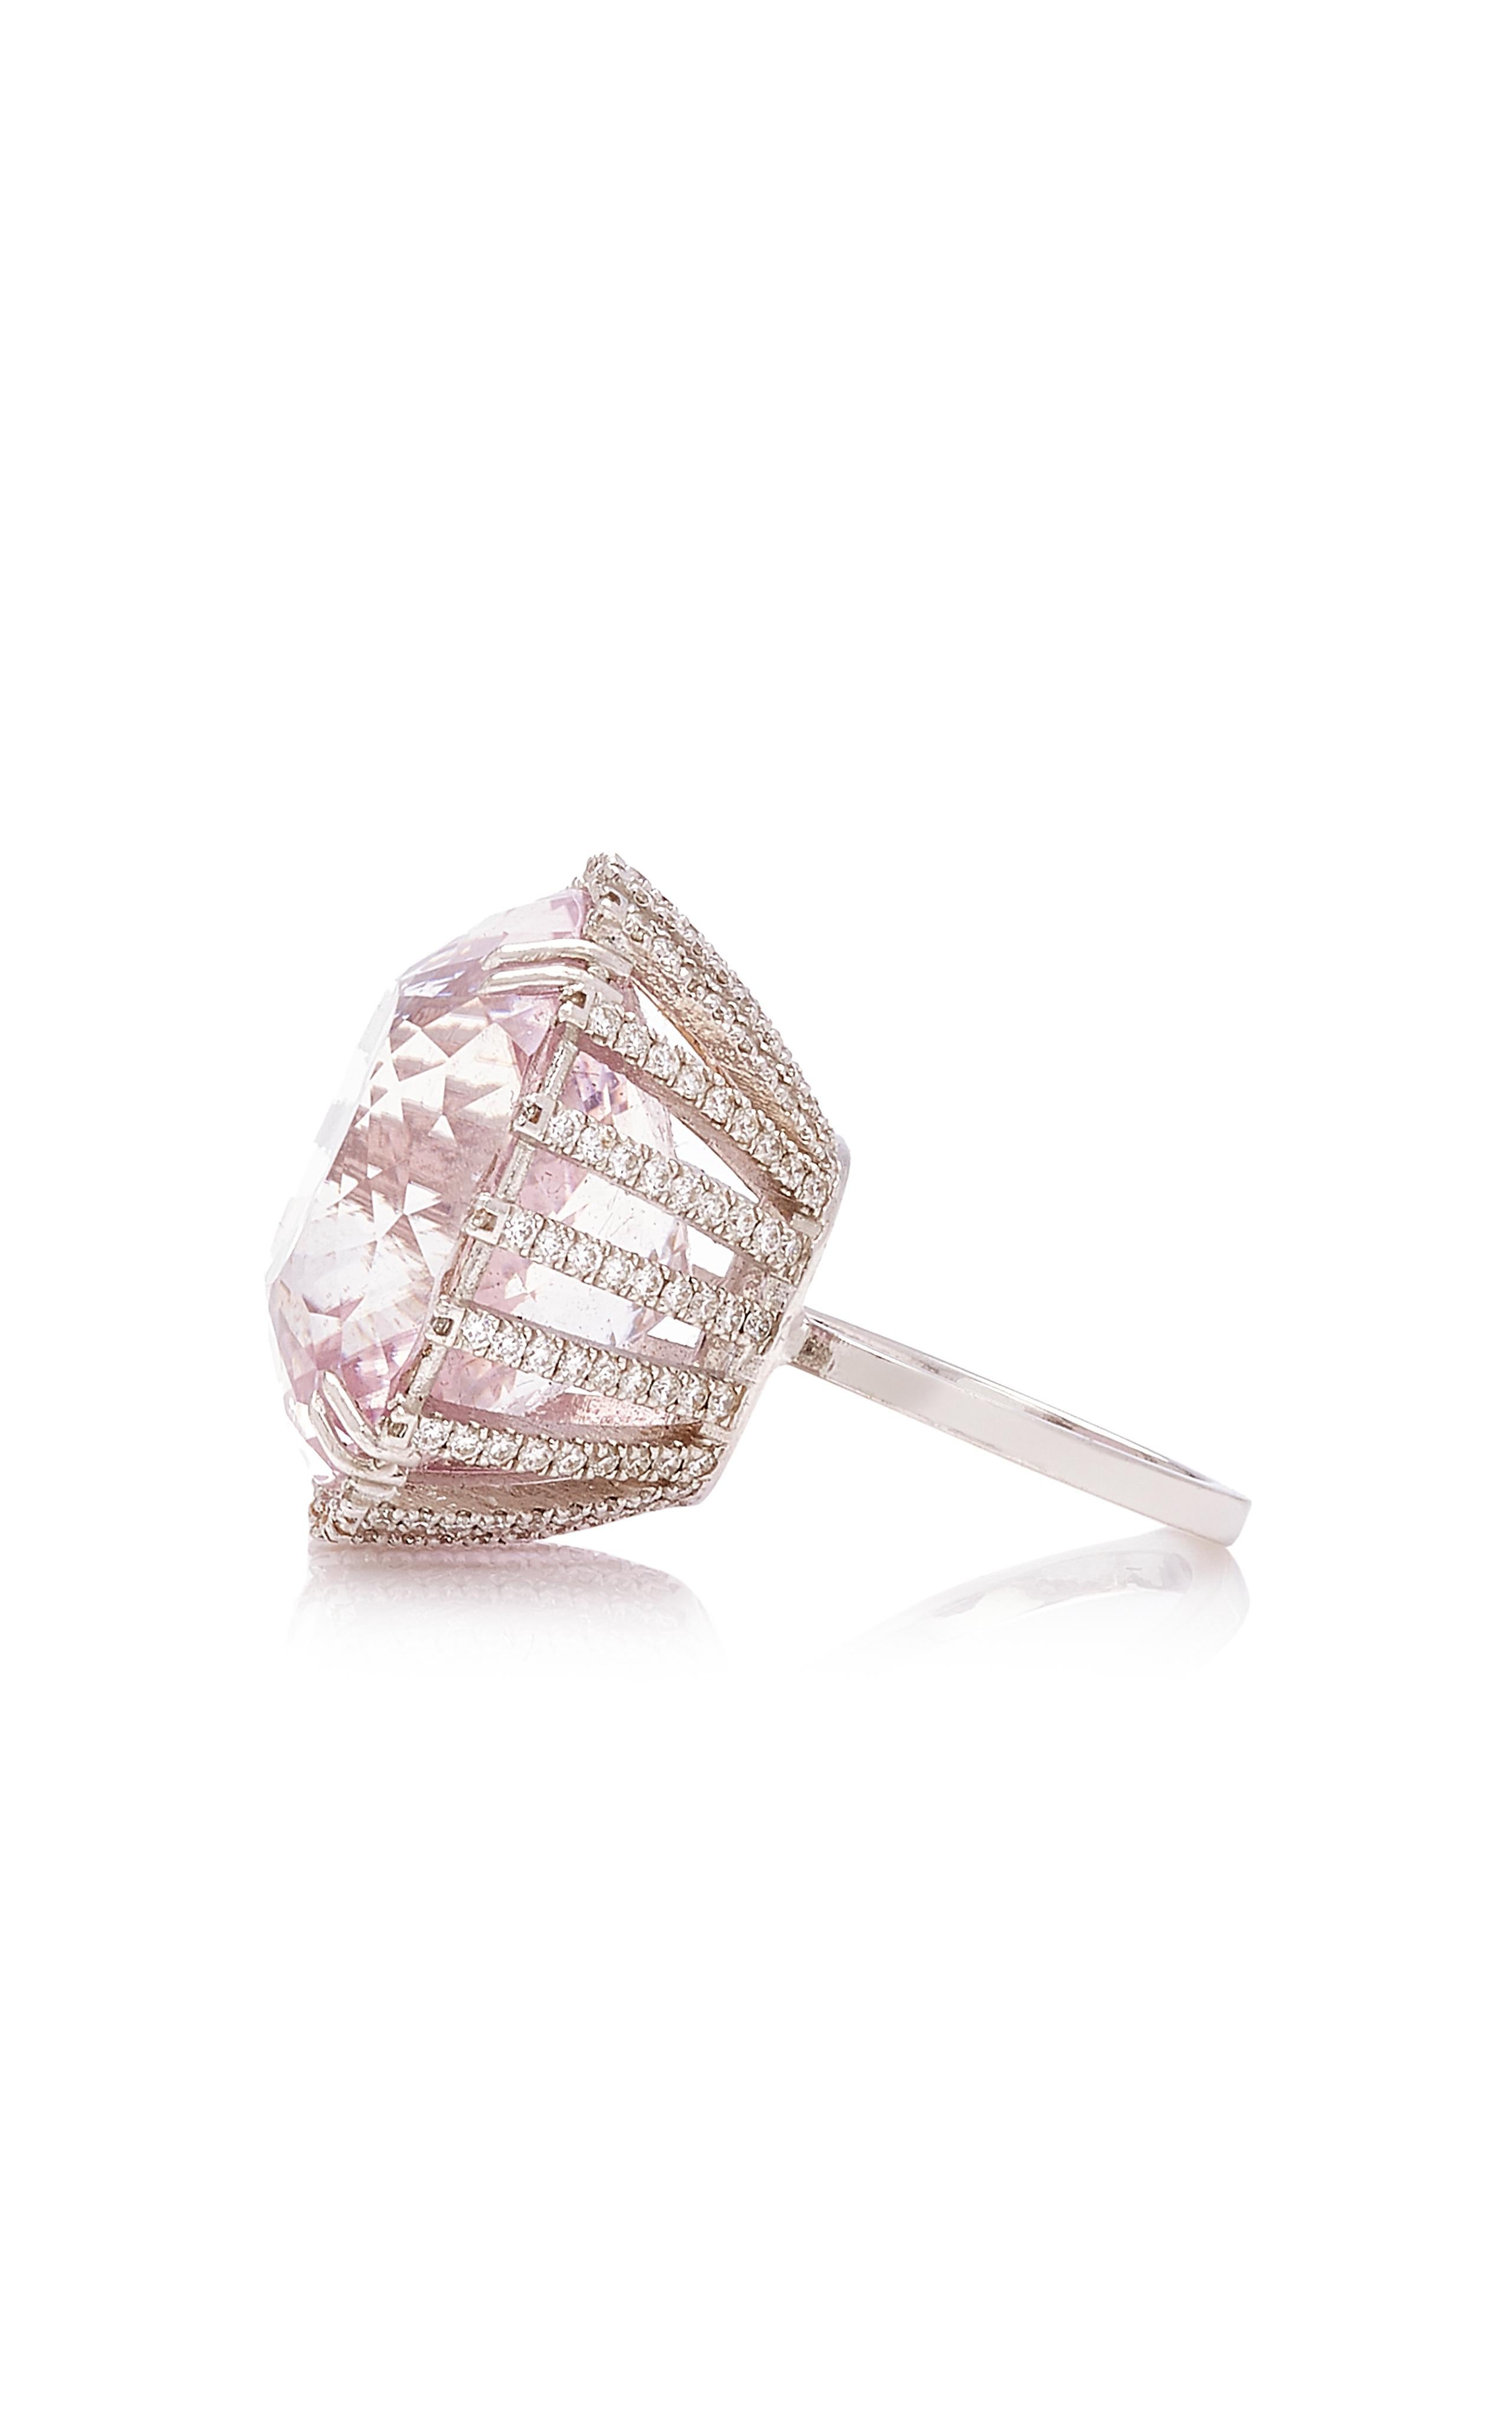 Bague en kunzite rose et diamants blancs Whiting
présente une kunzite à facettes, taillée en coussin, qui rayonne de teintes prismatiques de lavande et de rose, 
Présentée sur de superbes griffes incrustées de diamants avec un cadre de soutien de